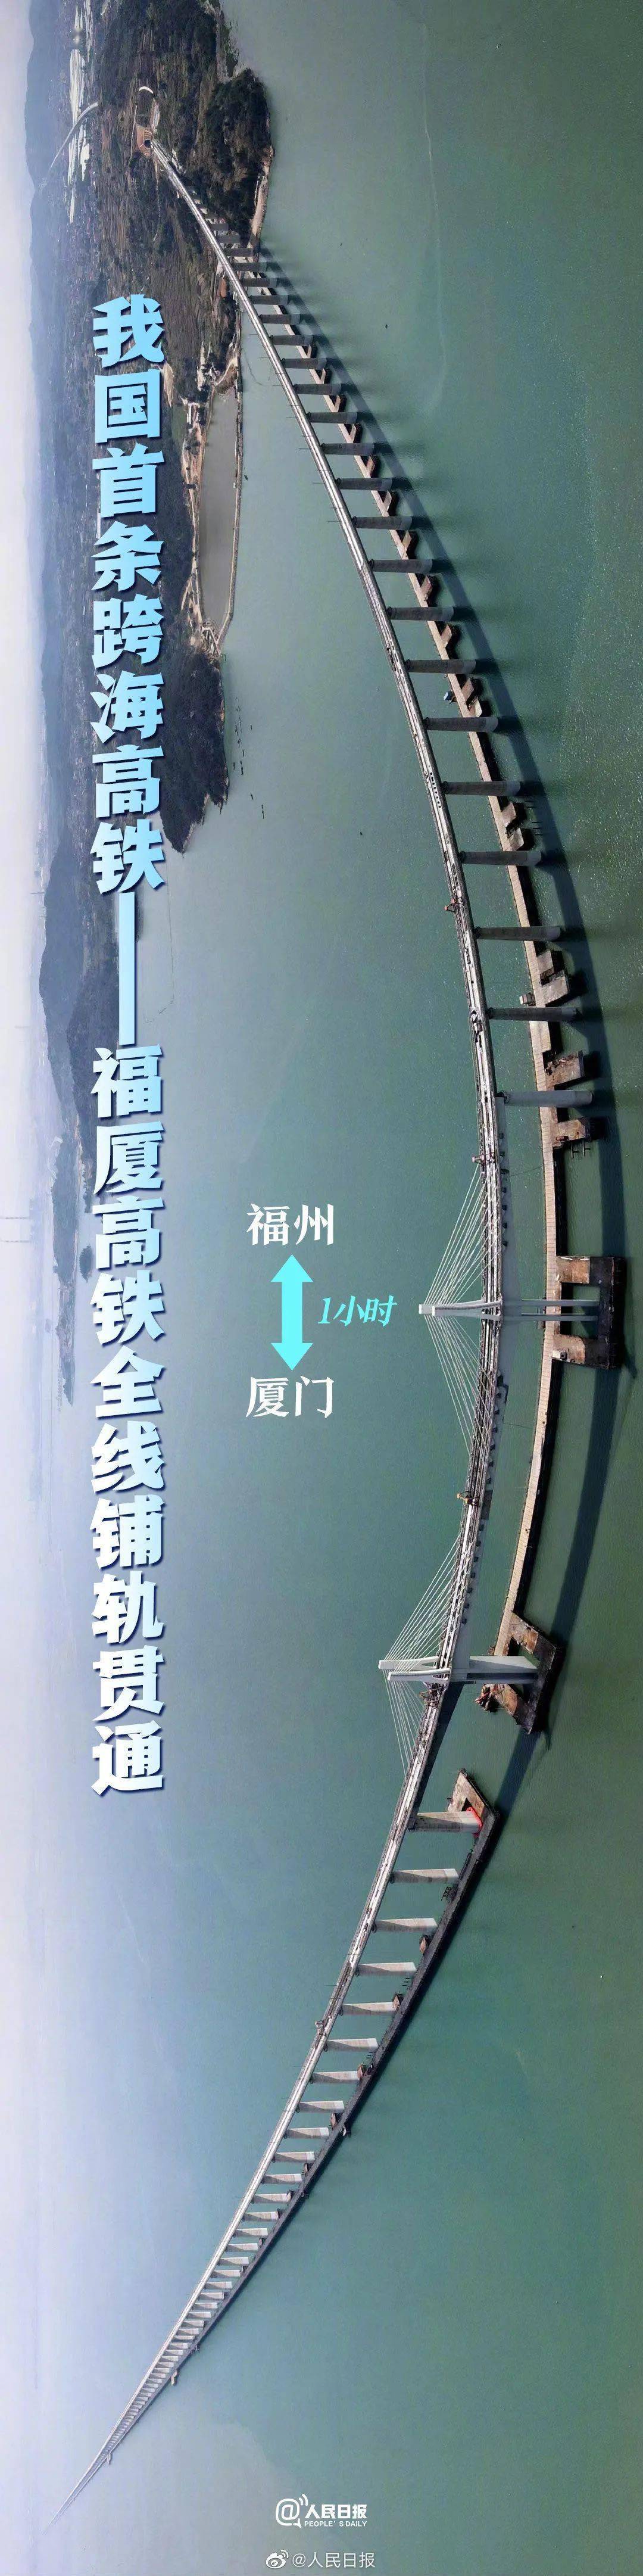 【中越双语】《荷花》微资讯 | 中国首条跨海高铁来了